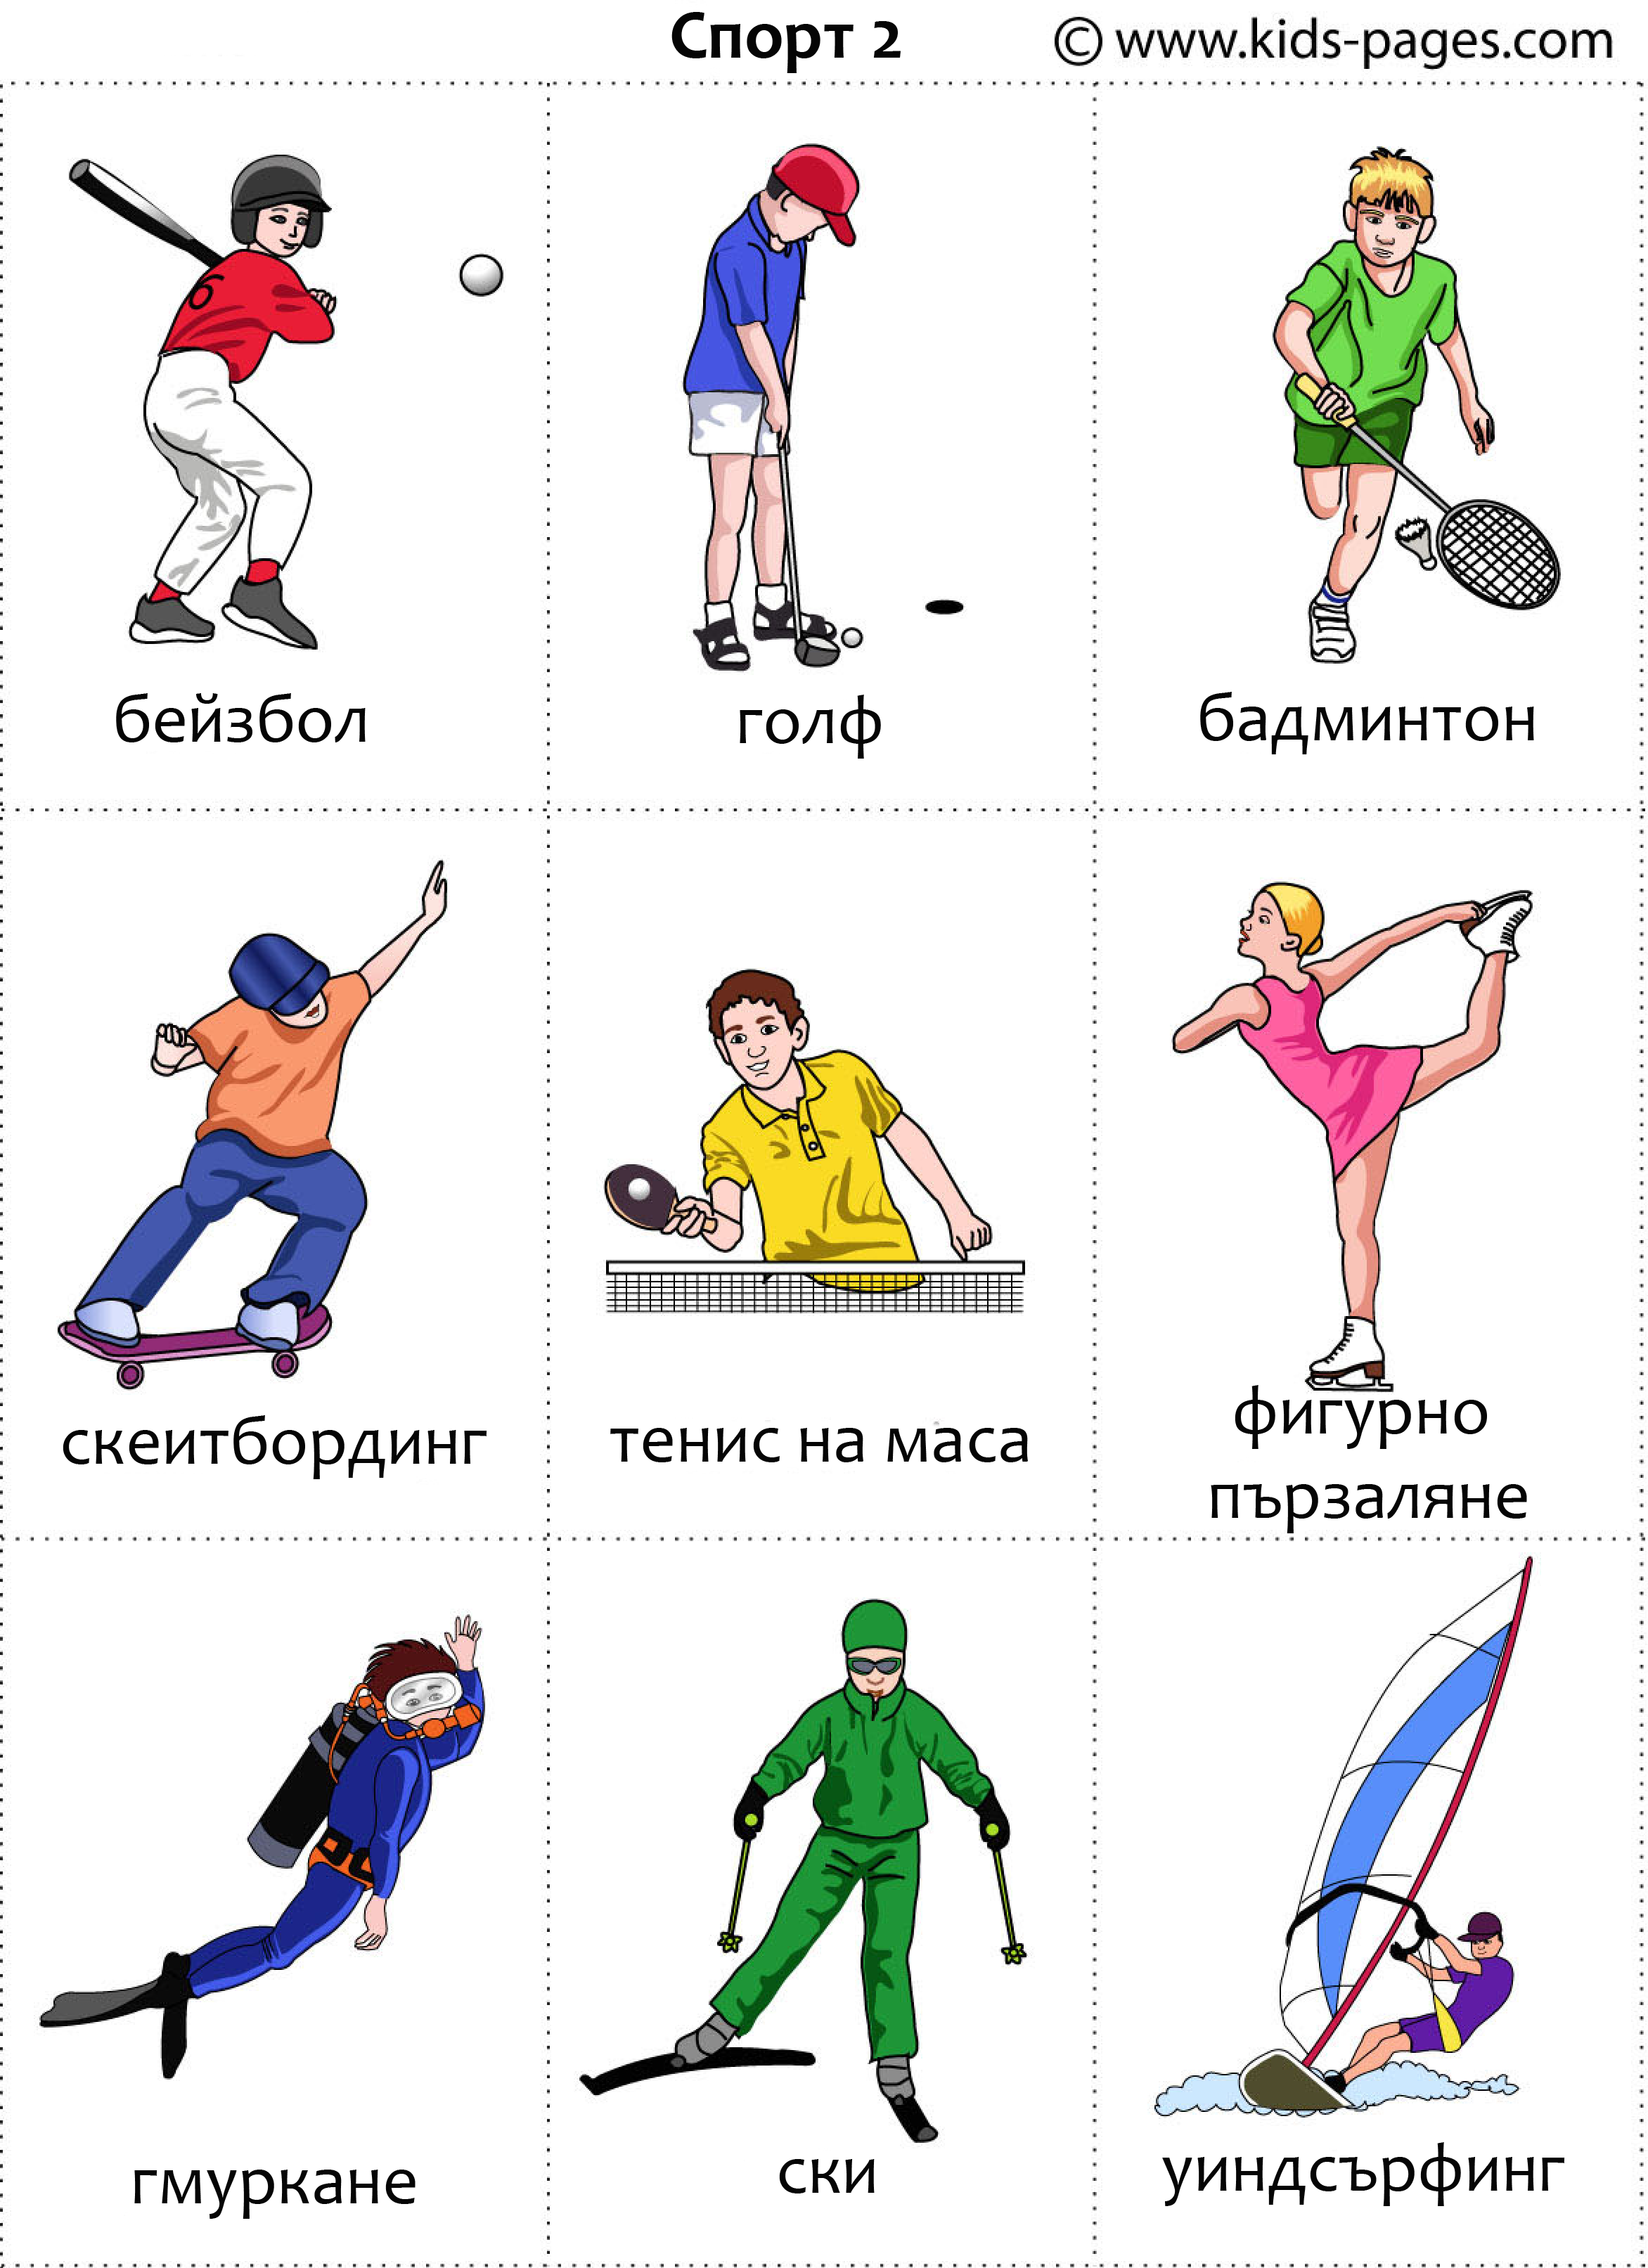 Как называются виды спорта на английском языке?